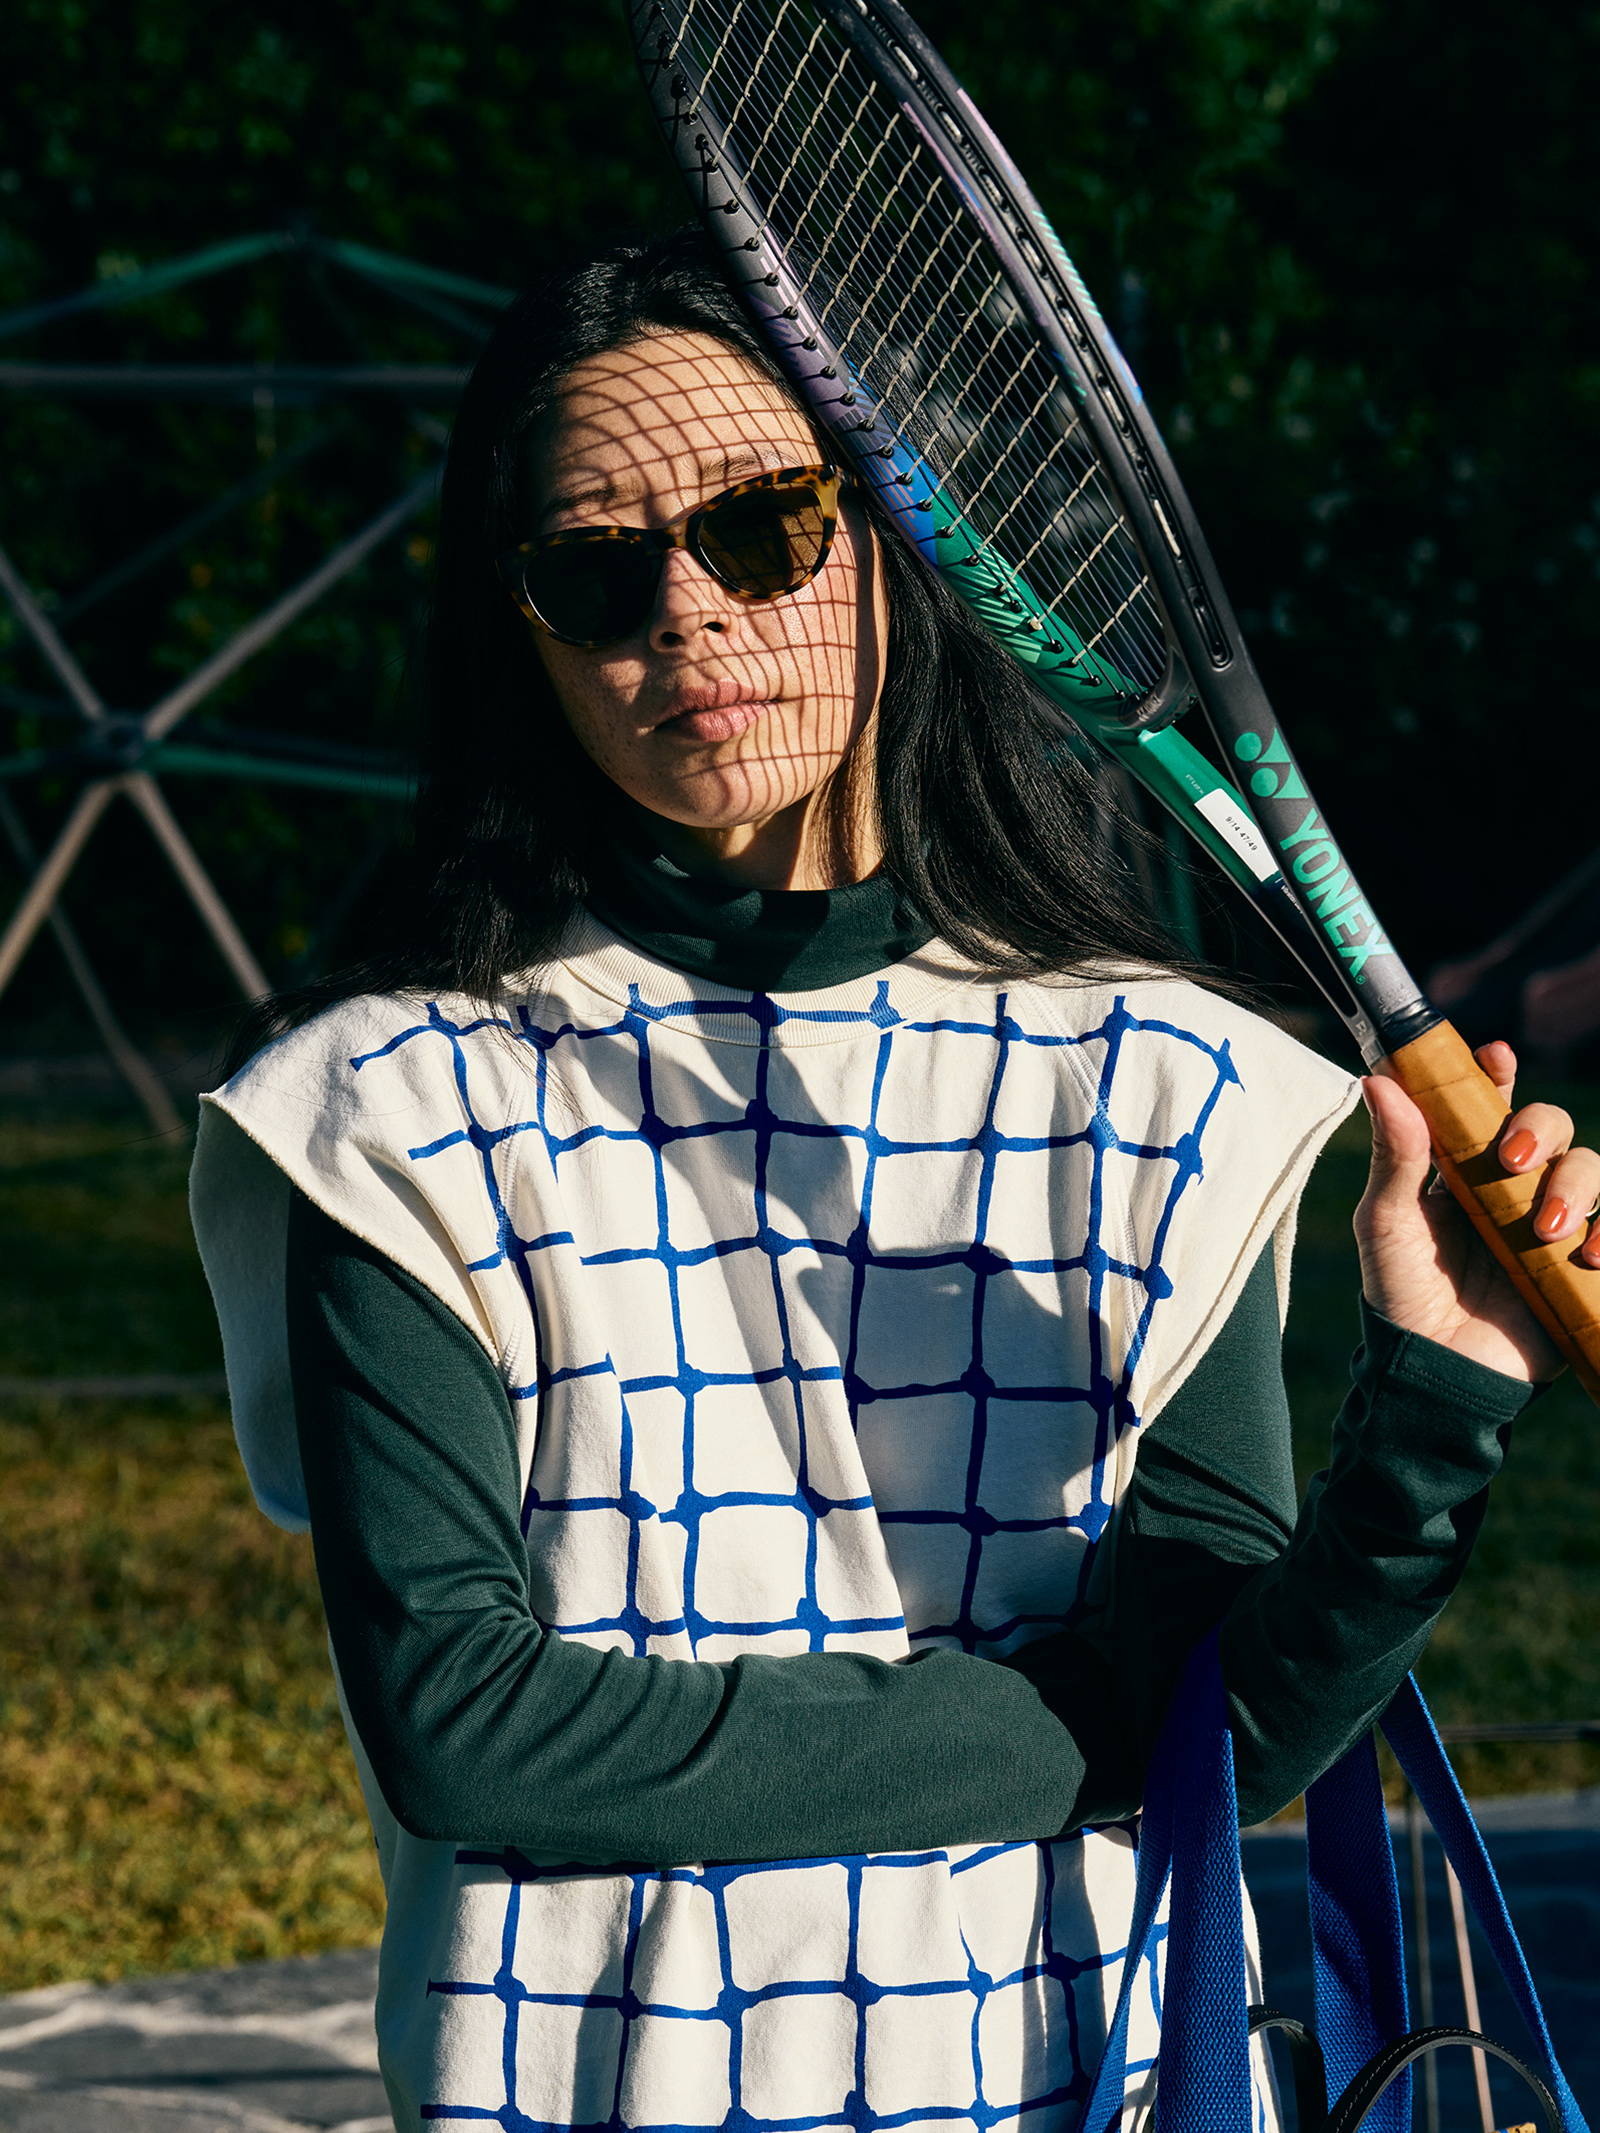 Clare V. x Racquet Passer Le Filet Sweatshirt – Racquet Magazine